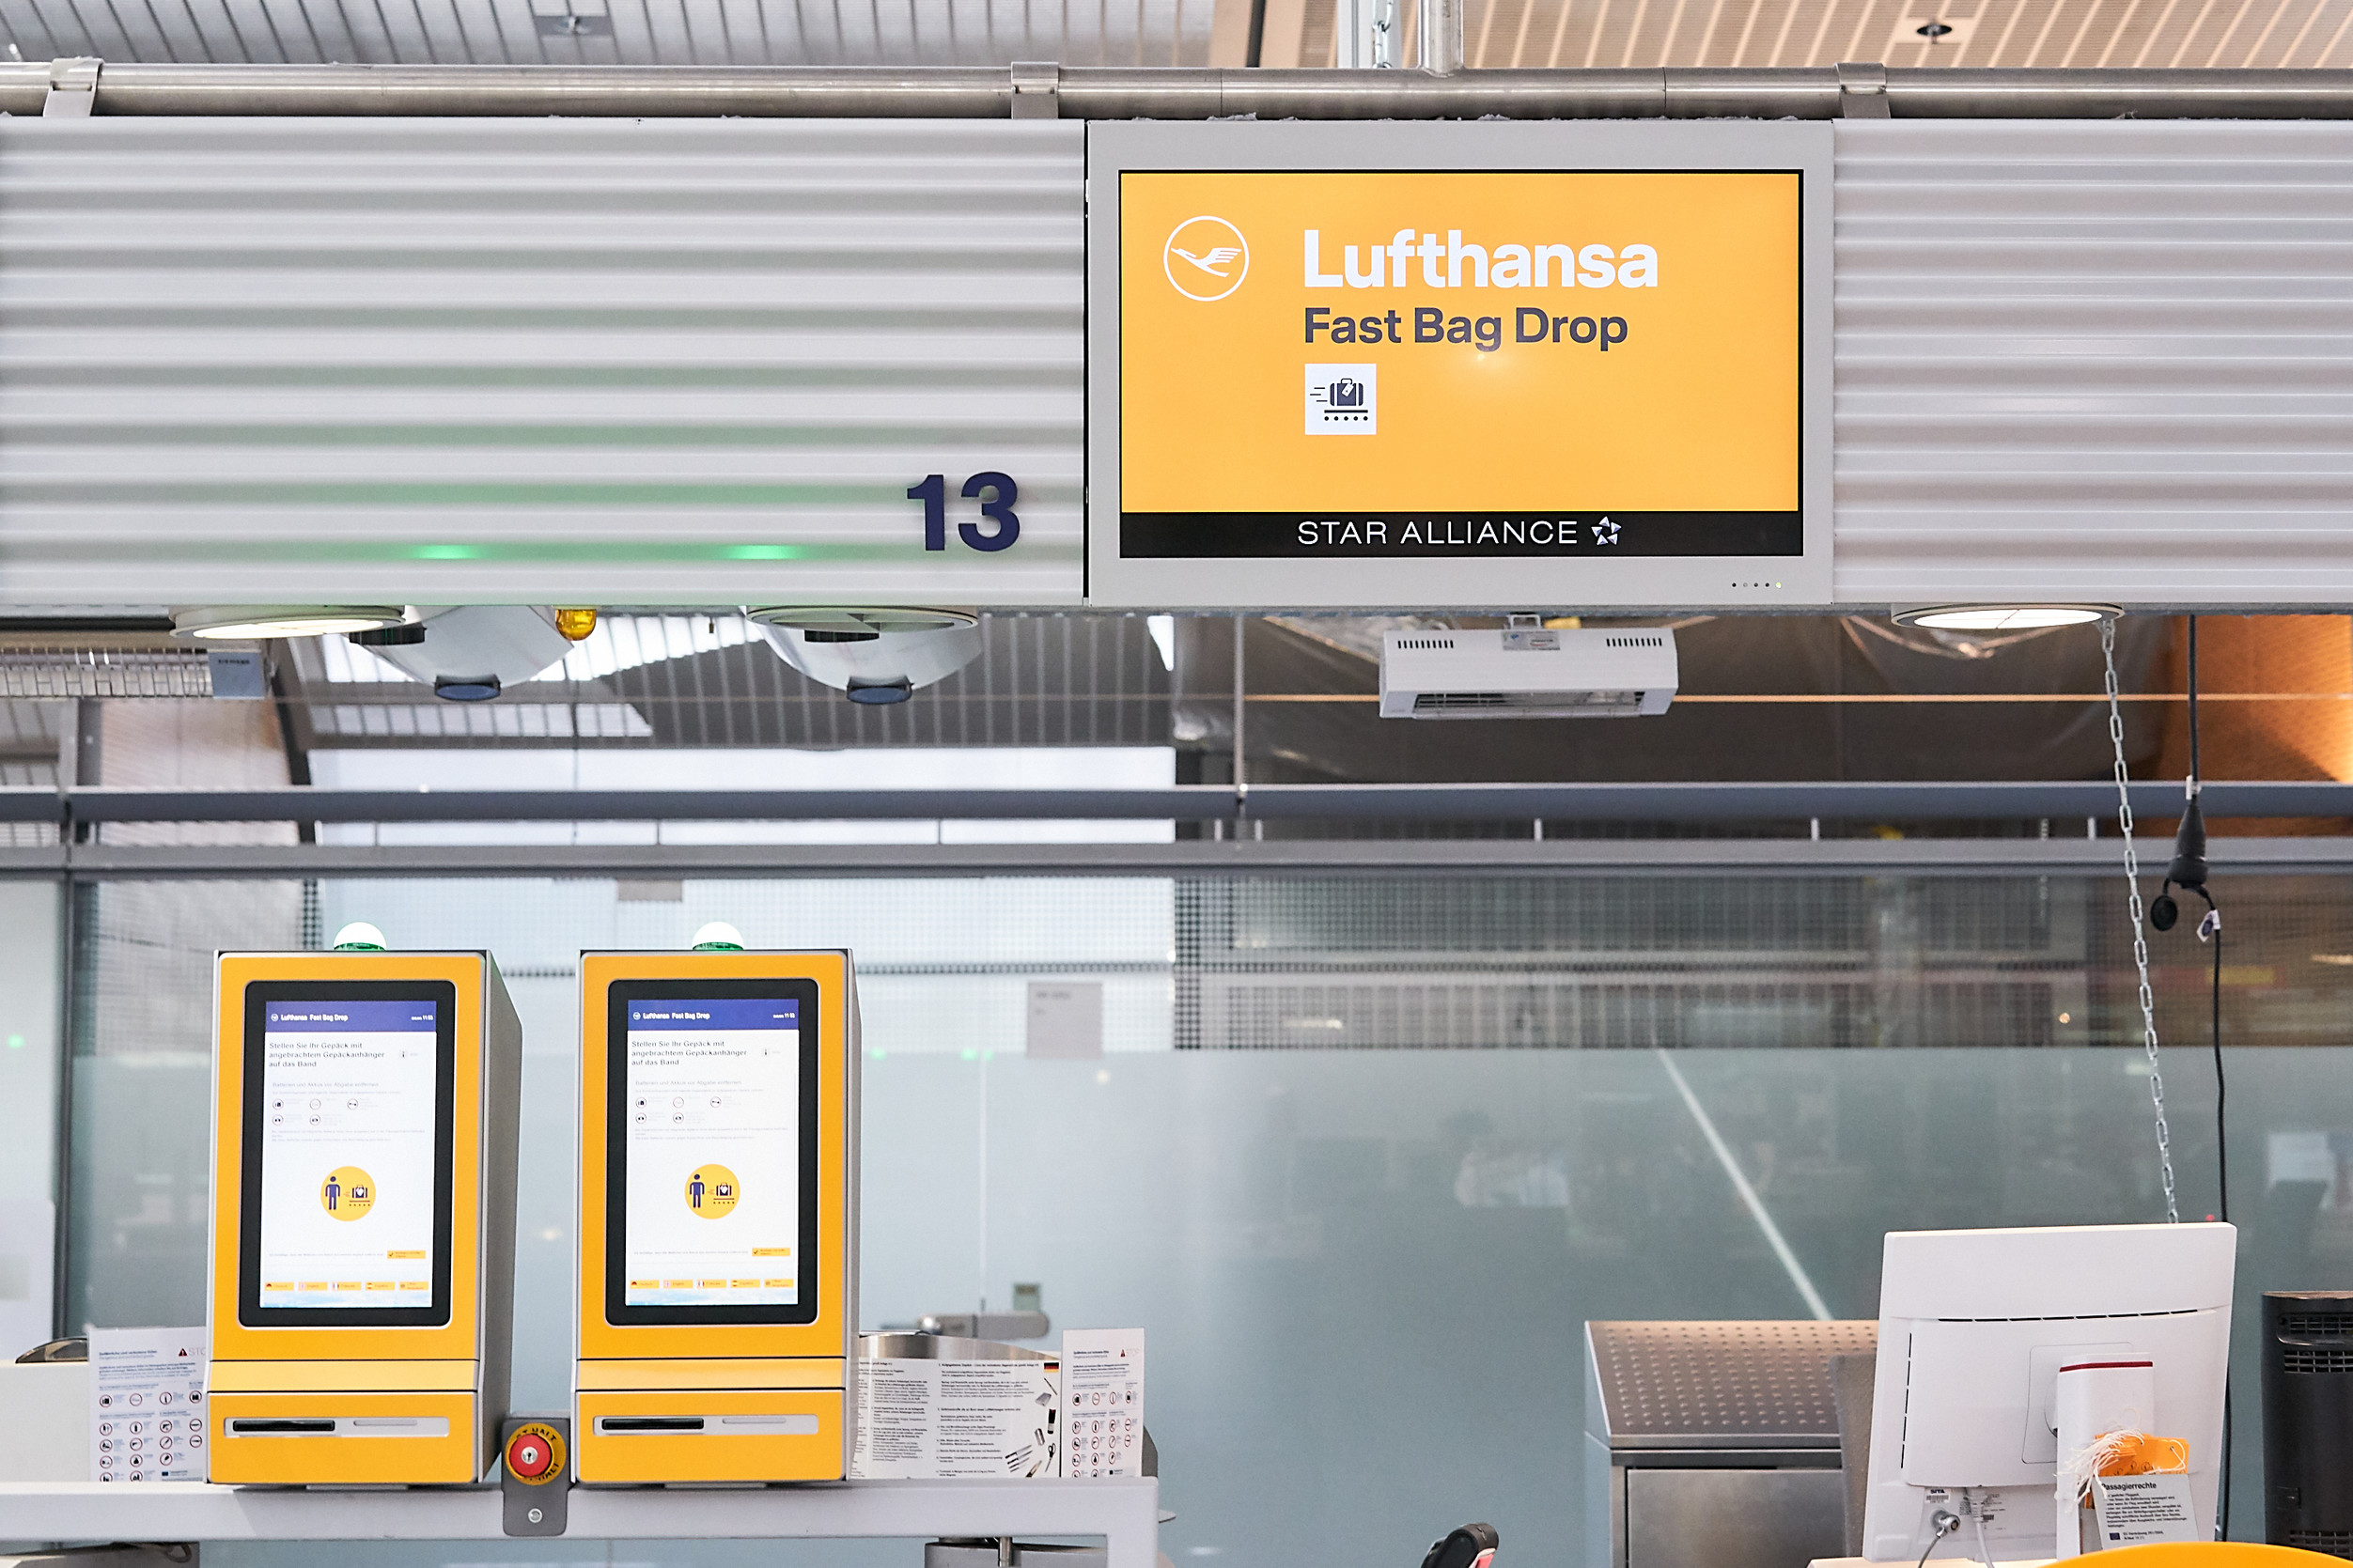 Zum in Hessen: Lufthansa empfiehlt rechtzeitige Anreise zum Flughafen und Nutzung digitaler Services - Lufthansa